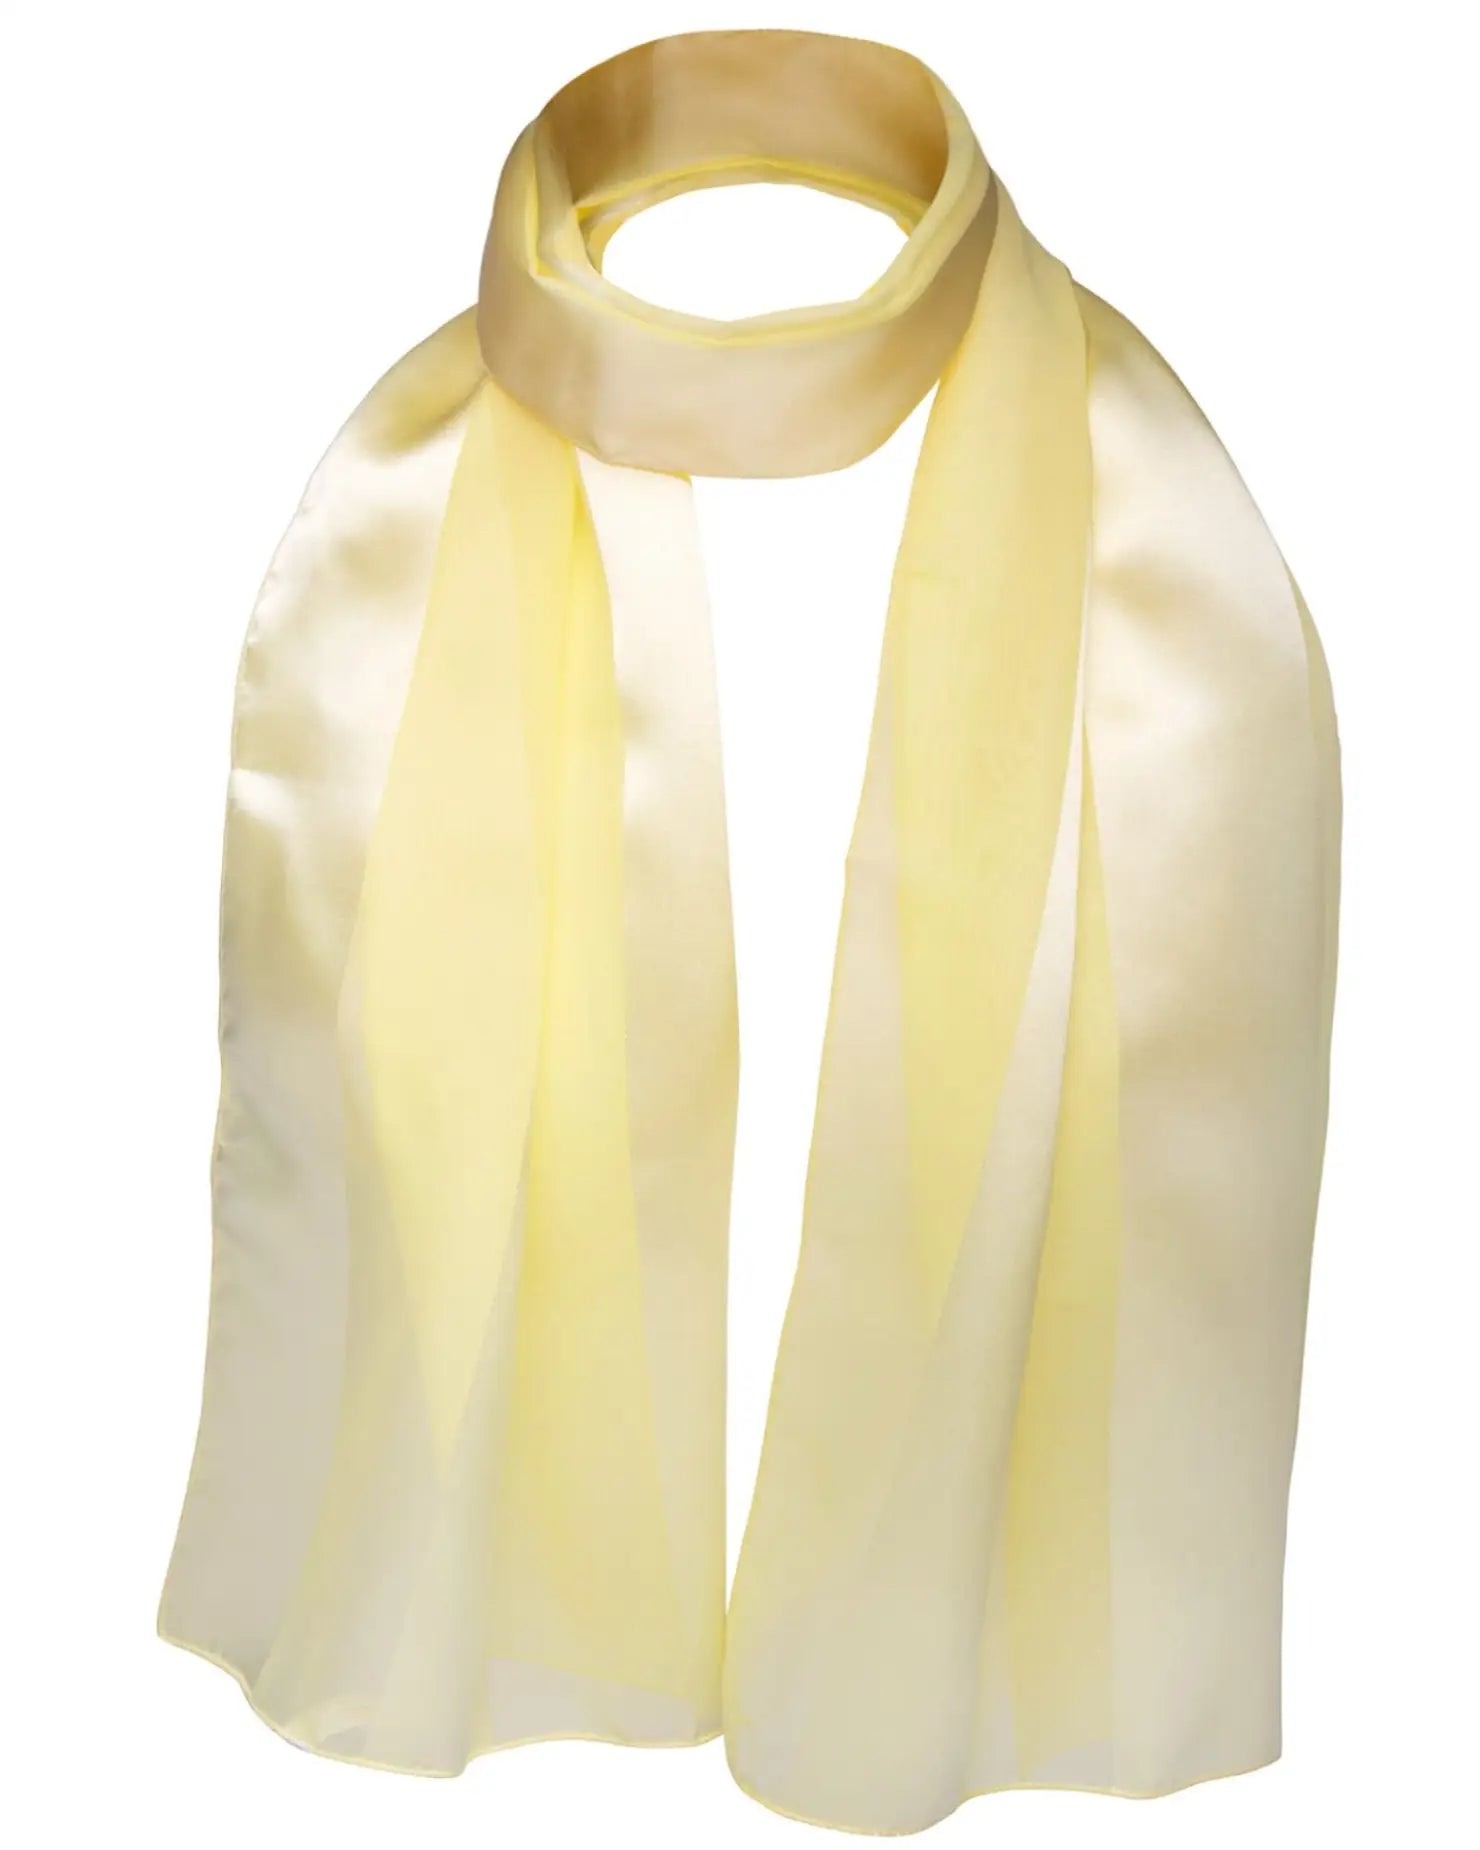 Yellow satin stripe scarf on white background